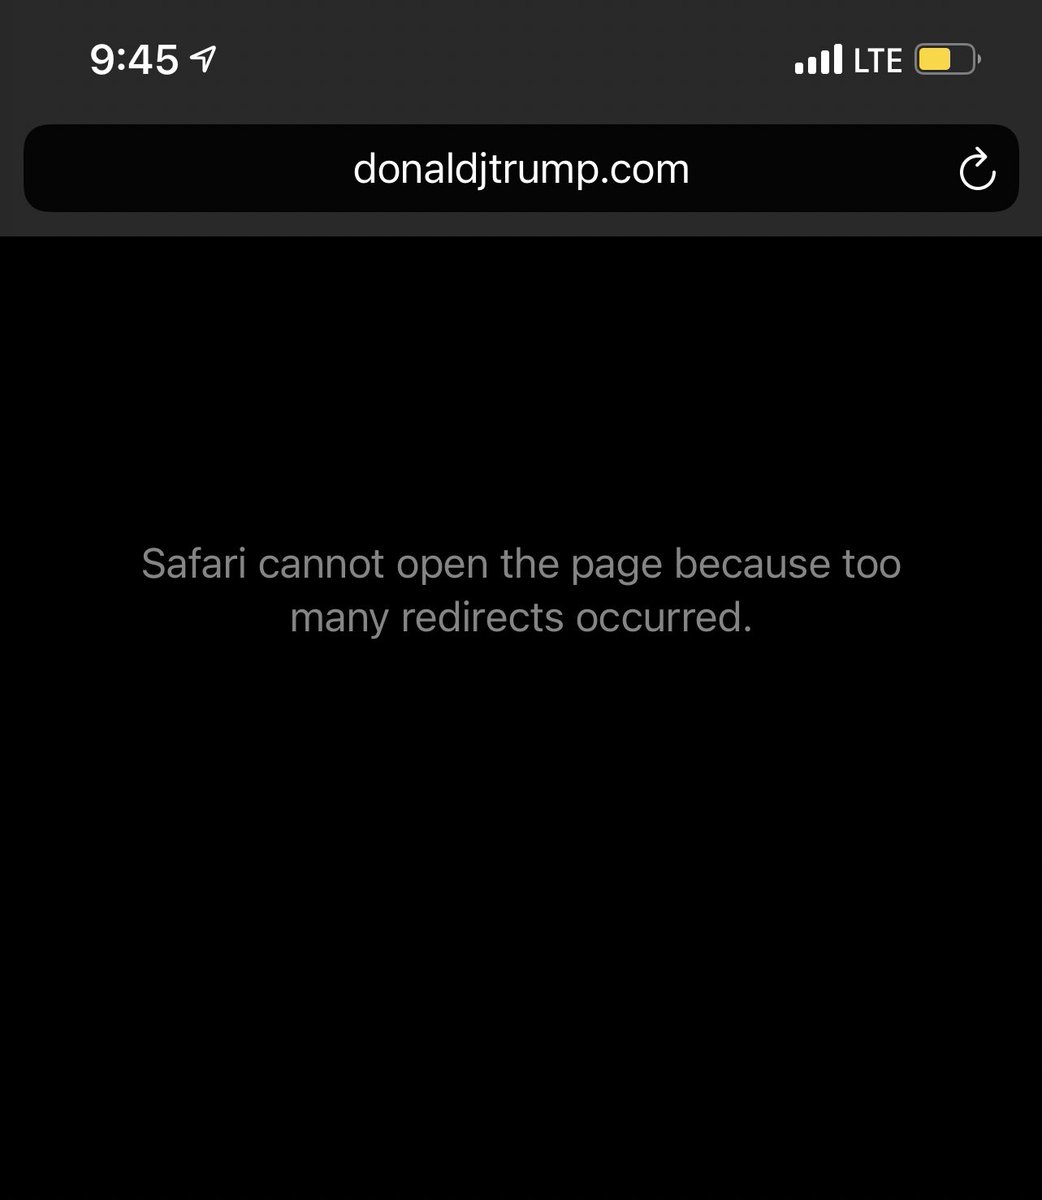 Trump campaign website is down. DonaldJTrump.com